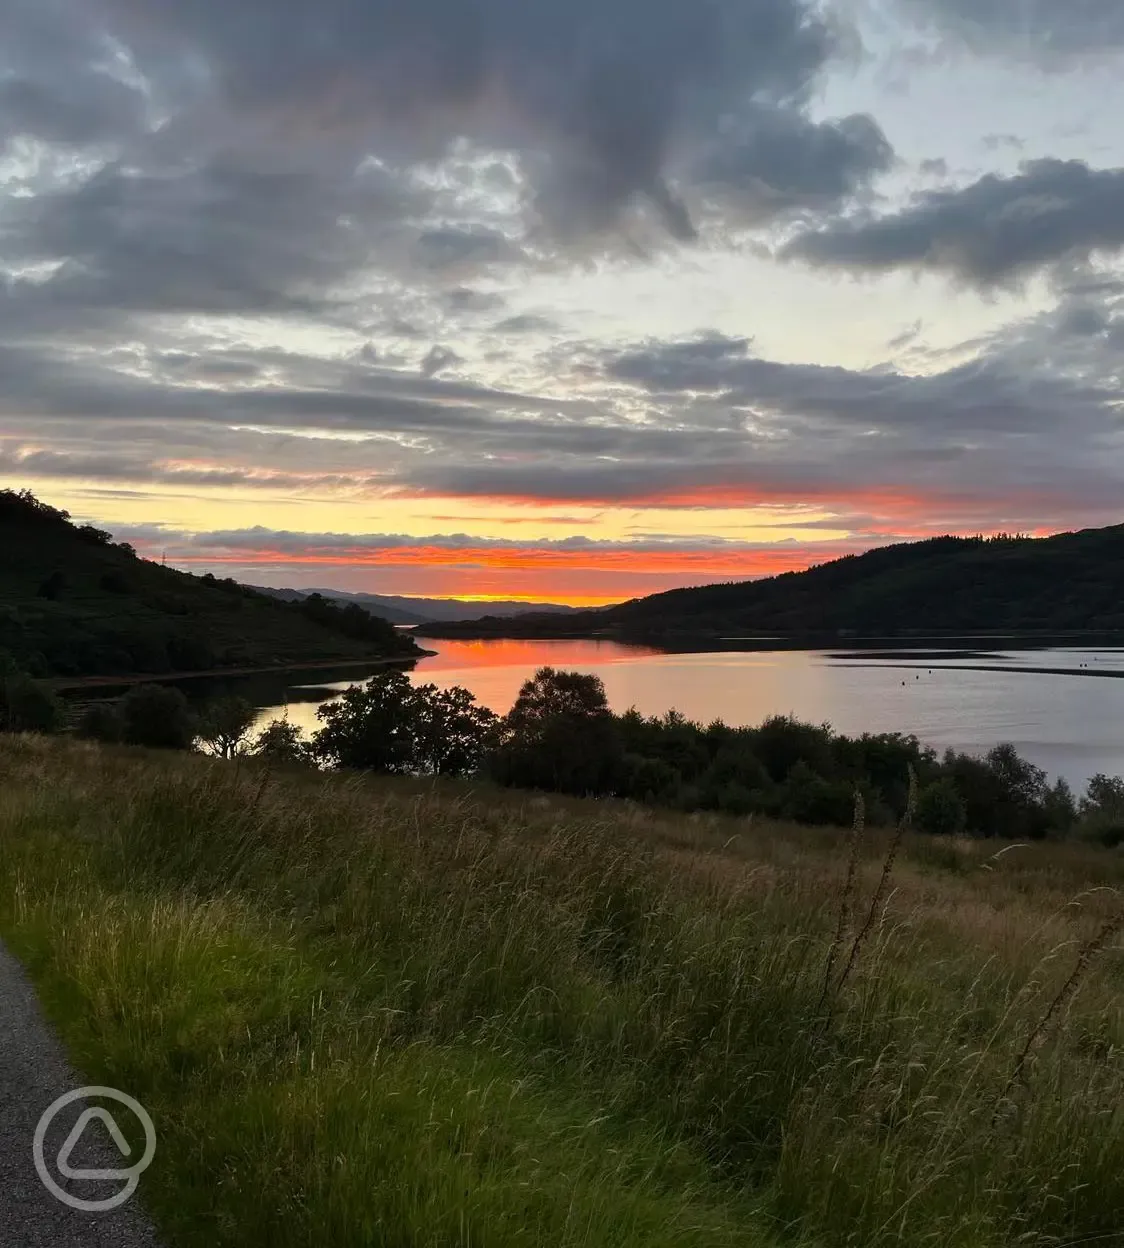 Sunset over Loch Sunart